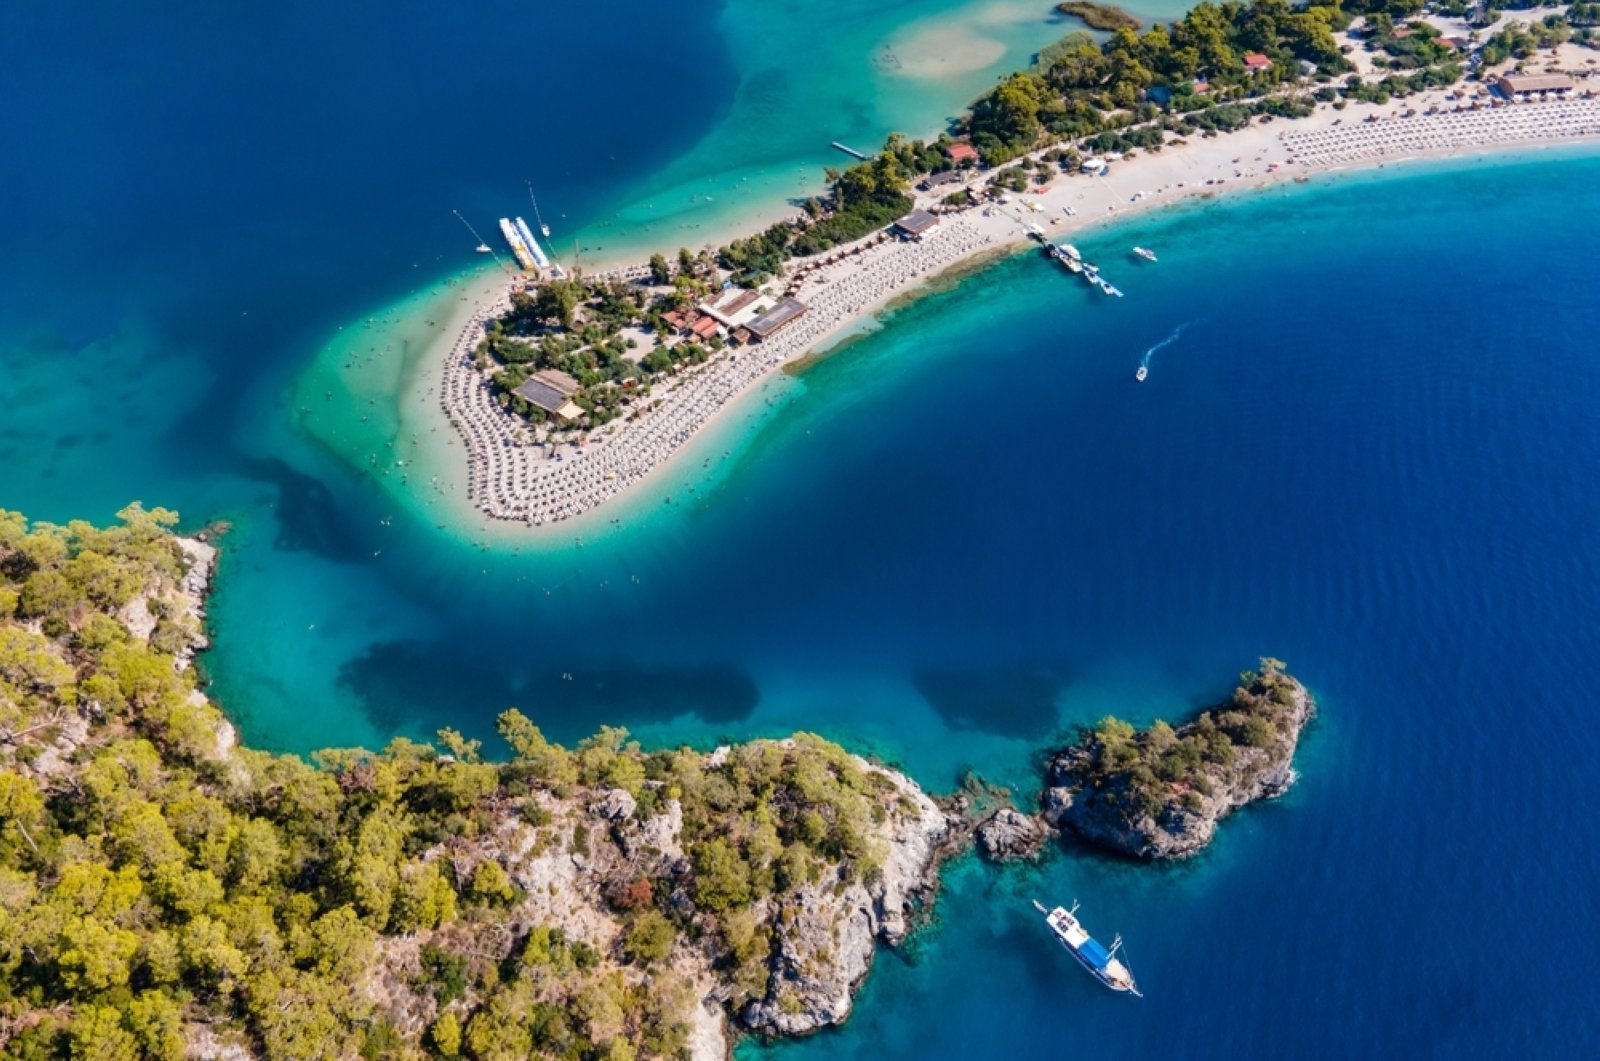 Türkiye’s Blue Lagoon of Ölüdeniz featured in world’s best beaches